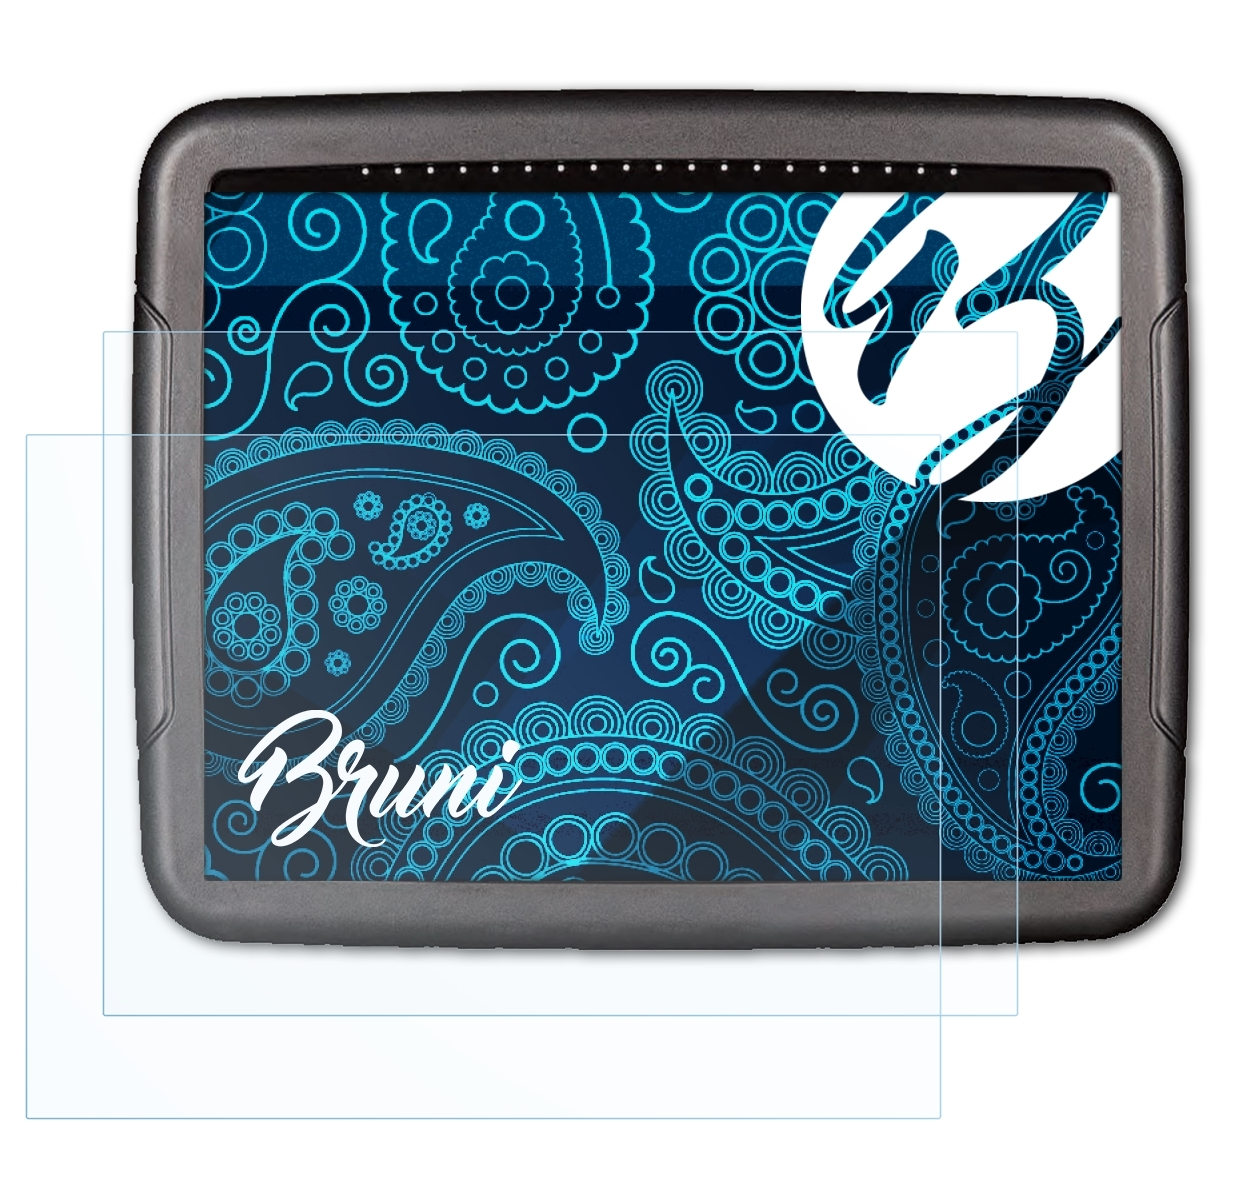 BRUNI 2x Topcon X35) Schutzfolie(für Basics-Clear